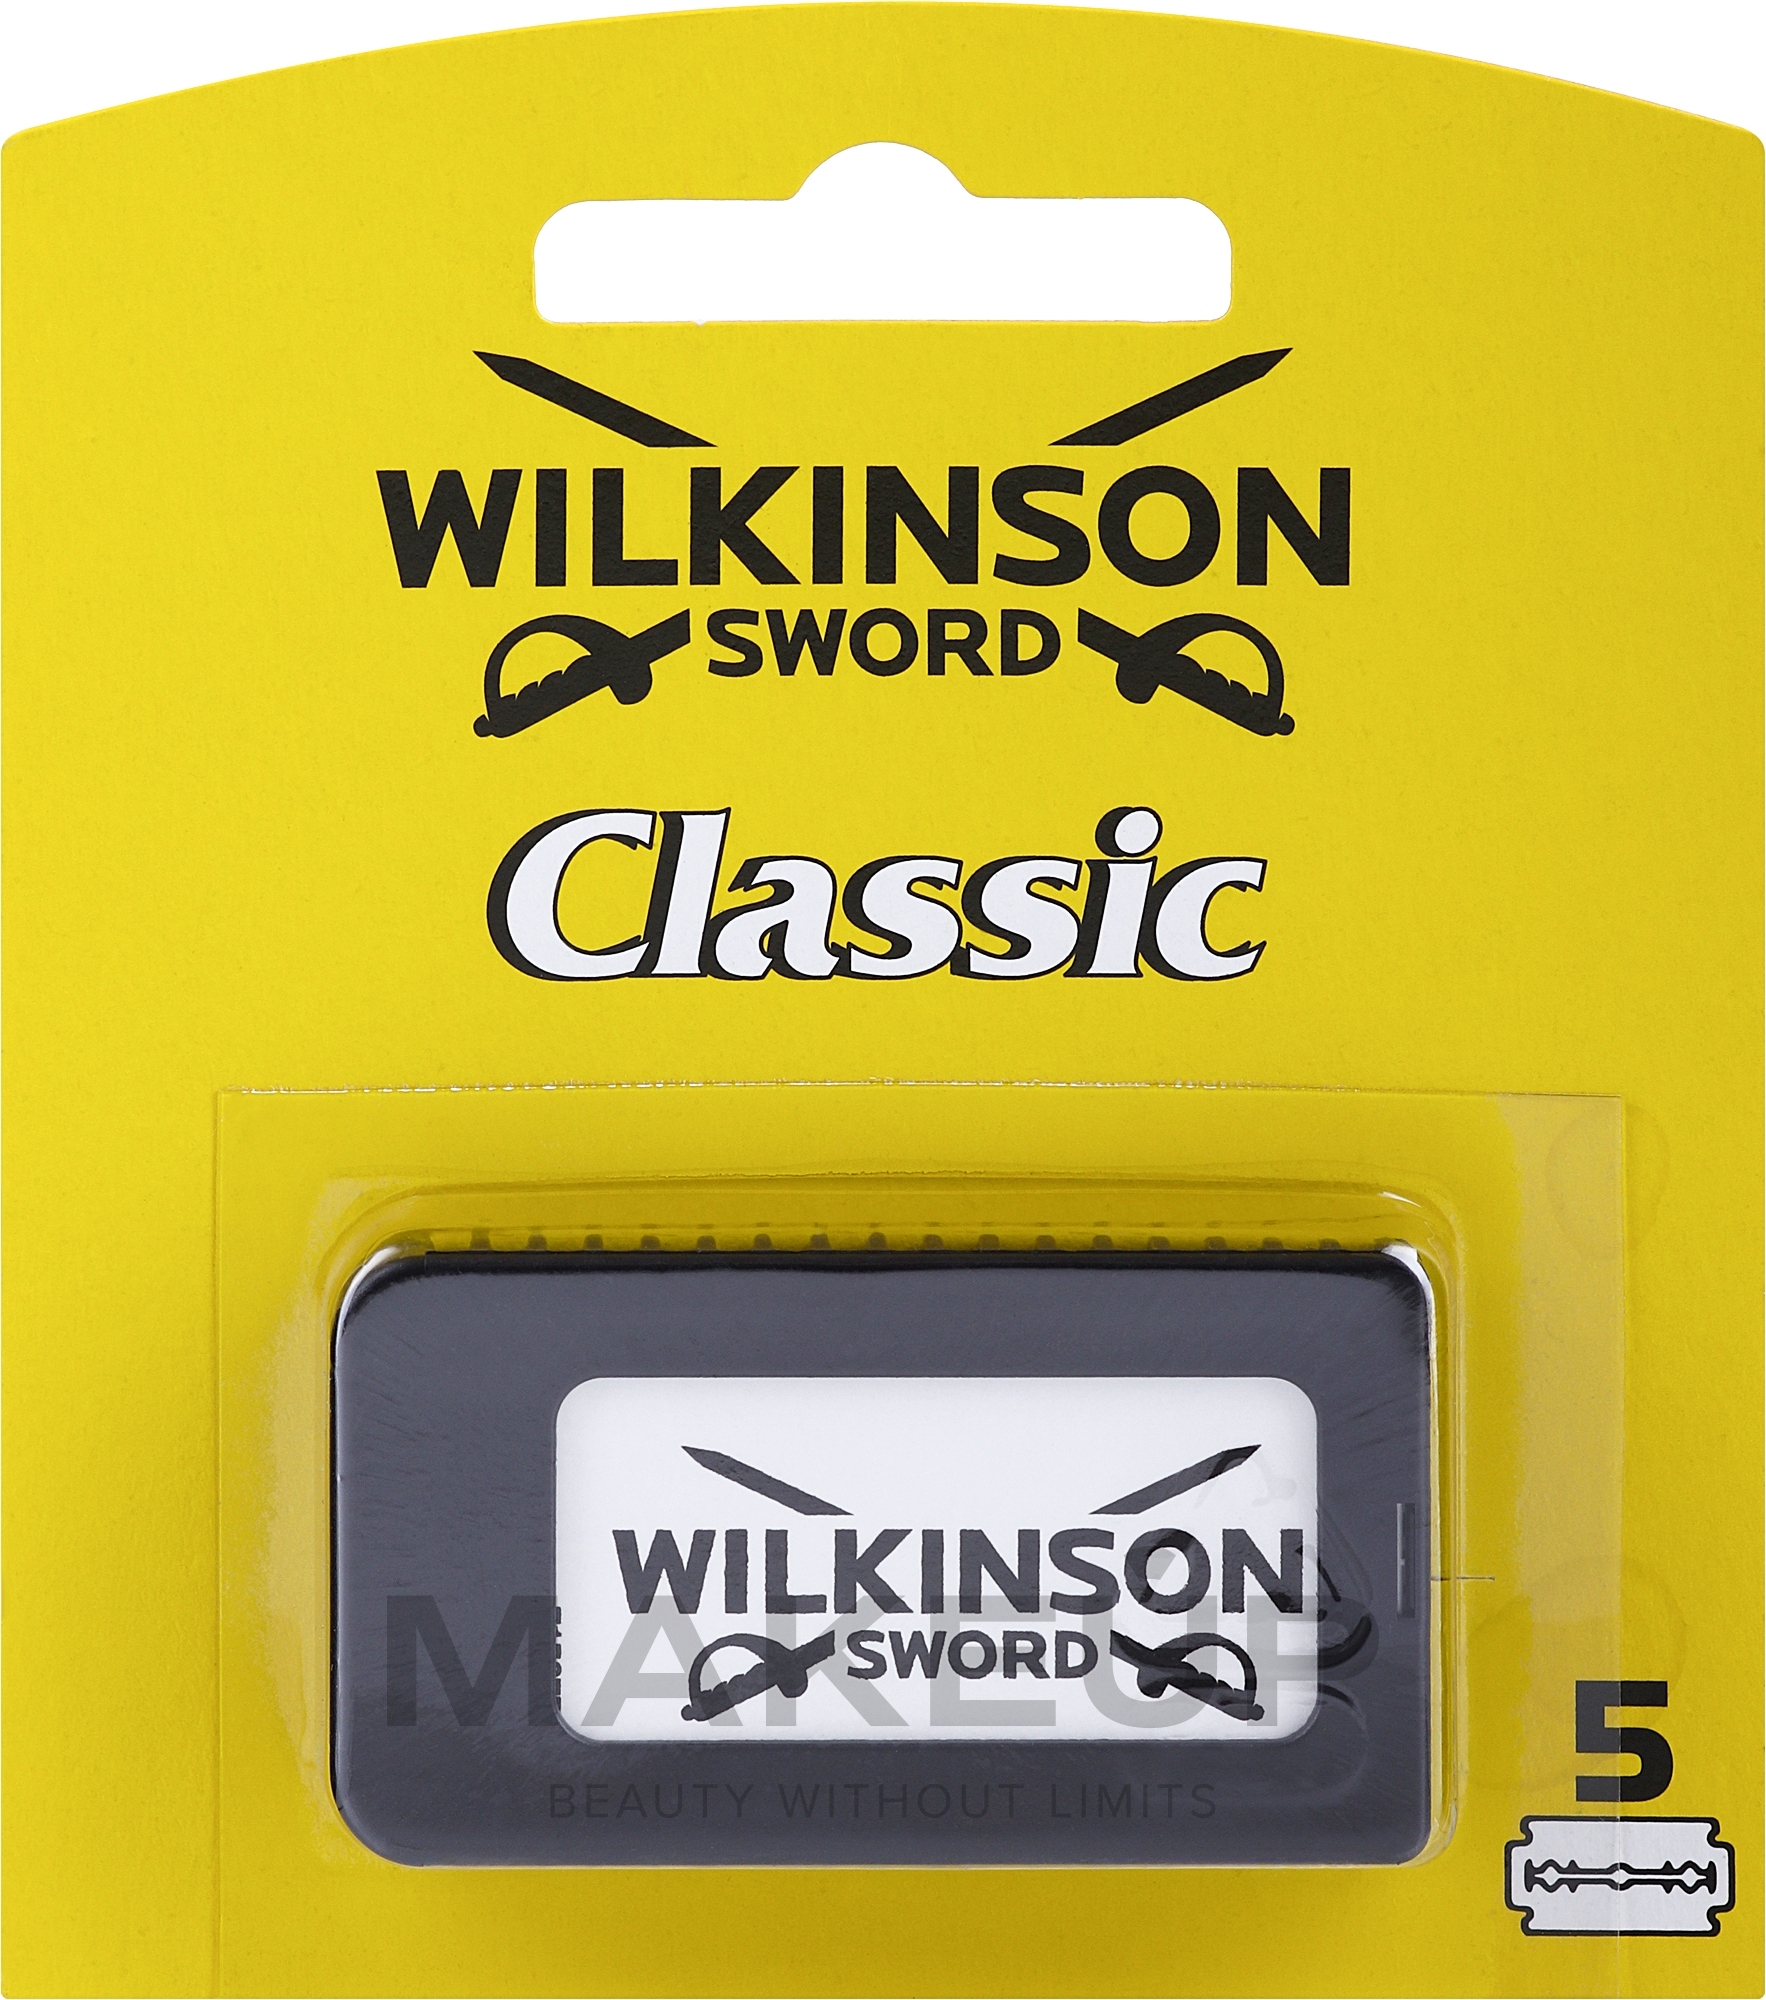 Wymienne ostrza do golenia, 5 szt. - Wilkinson Sword Classic — Zdjęcie 5 szt.